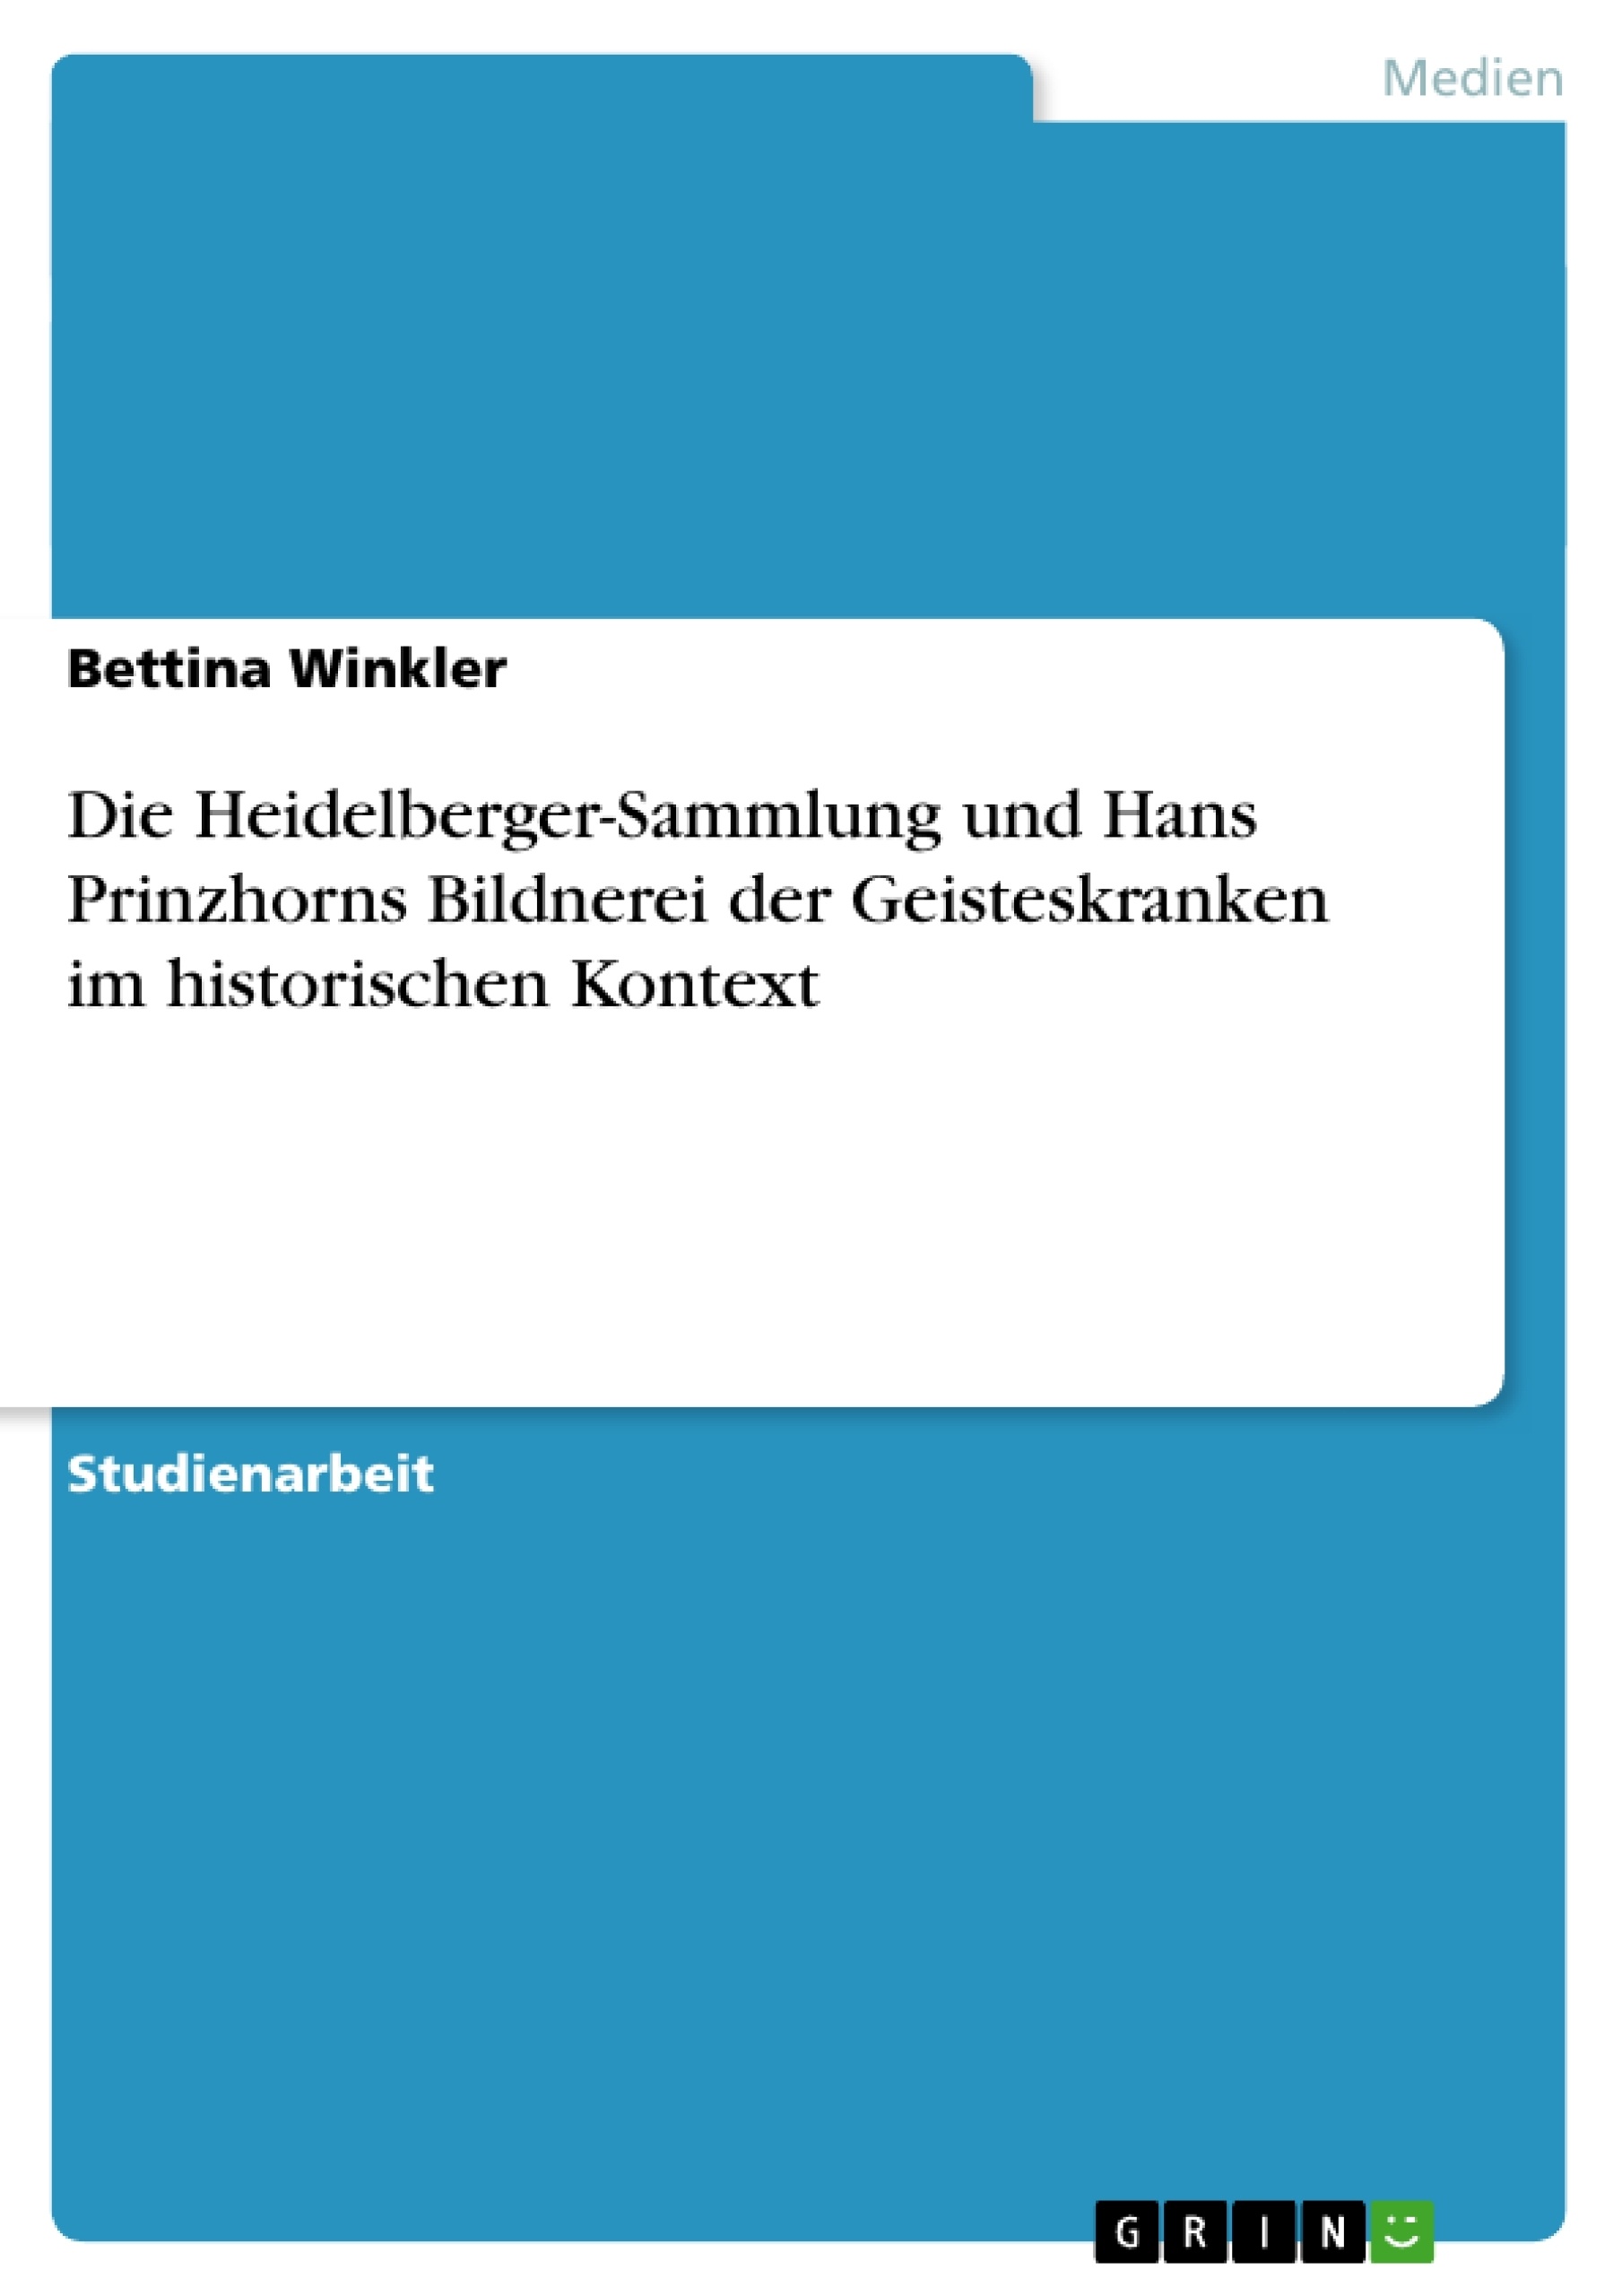 Título: Die Heidelberger-Sammlung und Hans Prinzhorns  Bildnerei der Geisteskranken  im historischen Kontext